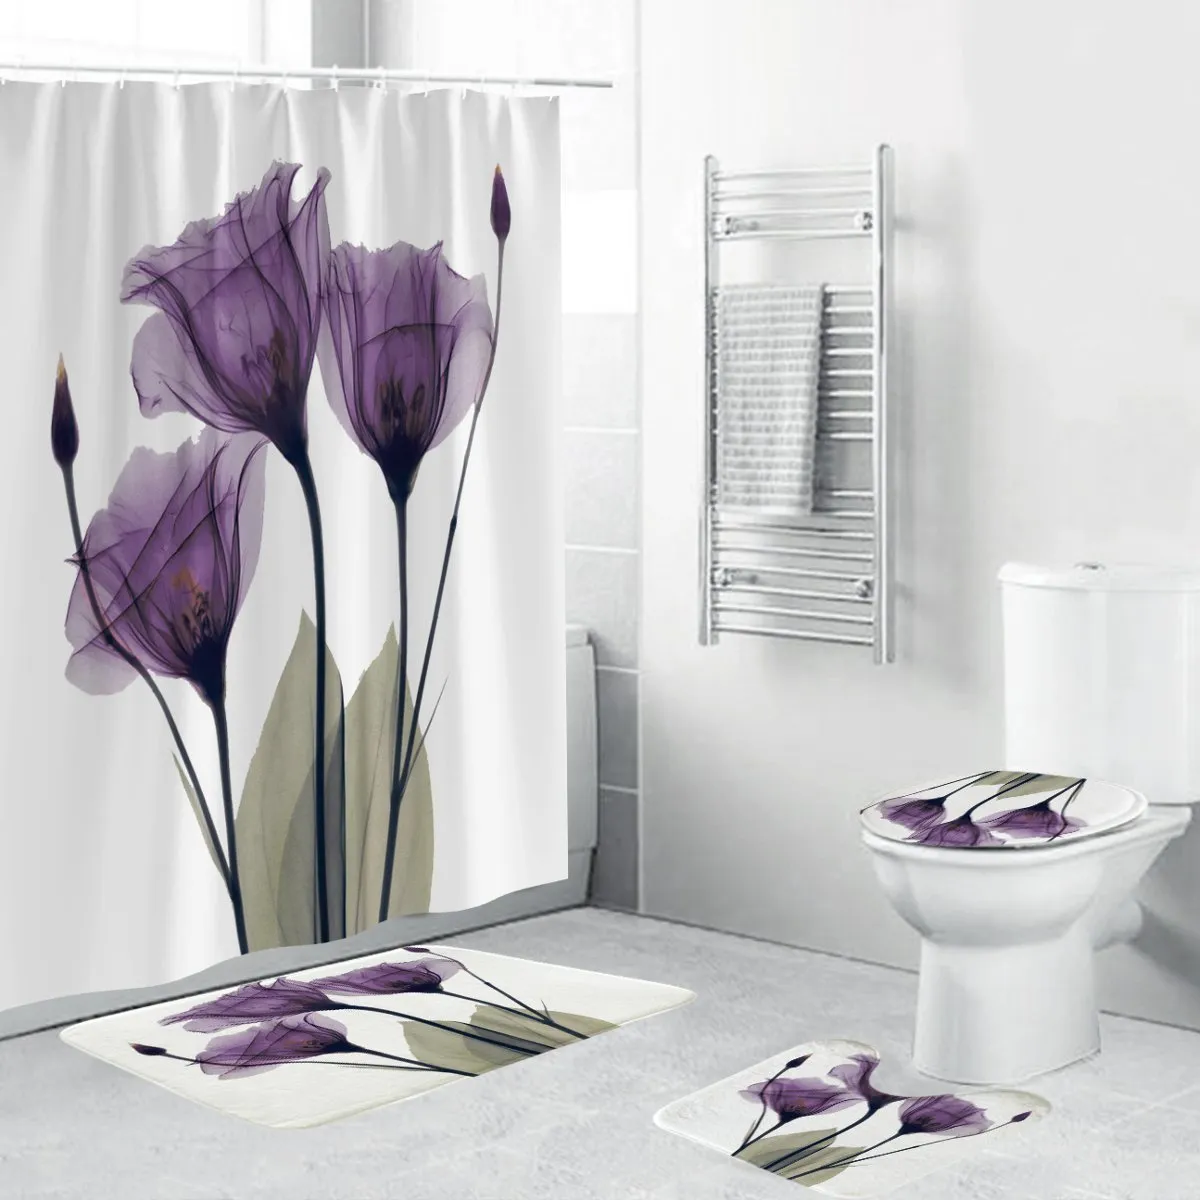 4pcs 플란넬 표면 욕실 매트 샤워 커튼 미끄럼 깔개 뚜껑 화장실 커버 목욕 매트 세트 보라색 꽃 인쇄 장식 홈 T200711